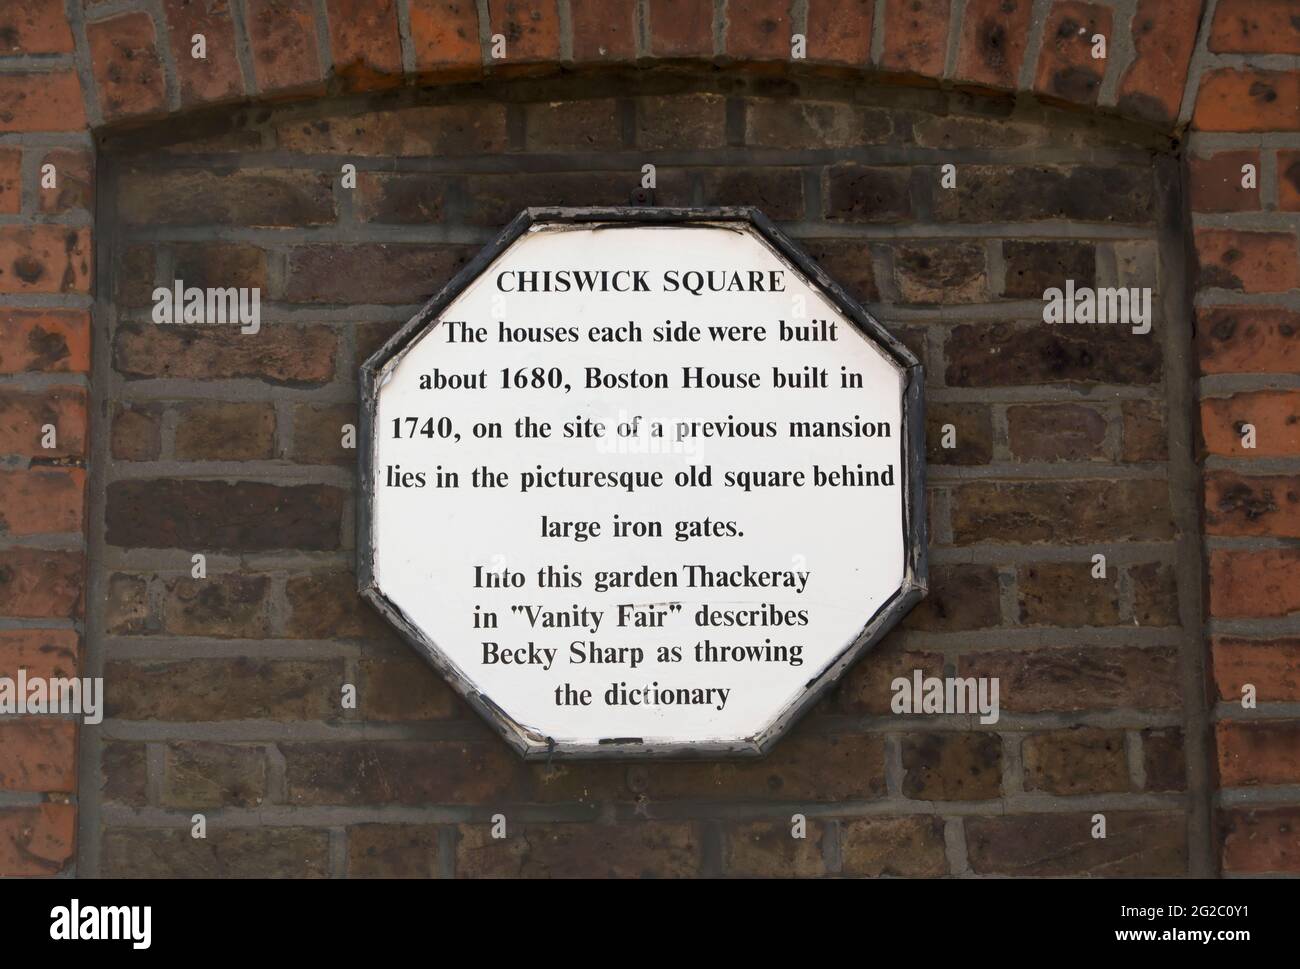 Wandtafel am chiswick Square, chiswick, london, england, beschreibt die Ursprünge des Platzes aus dem 17. Jahrhundert und seine Verbindung zu thackerays Eitelkeit-Messe Stockfoto